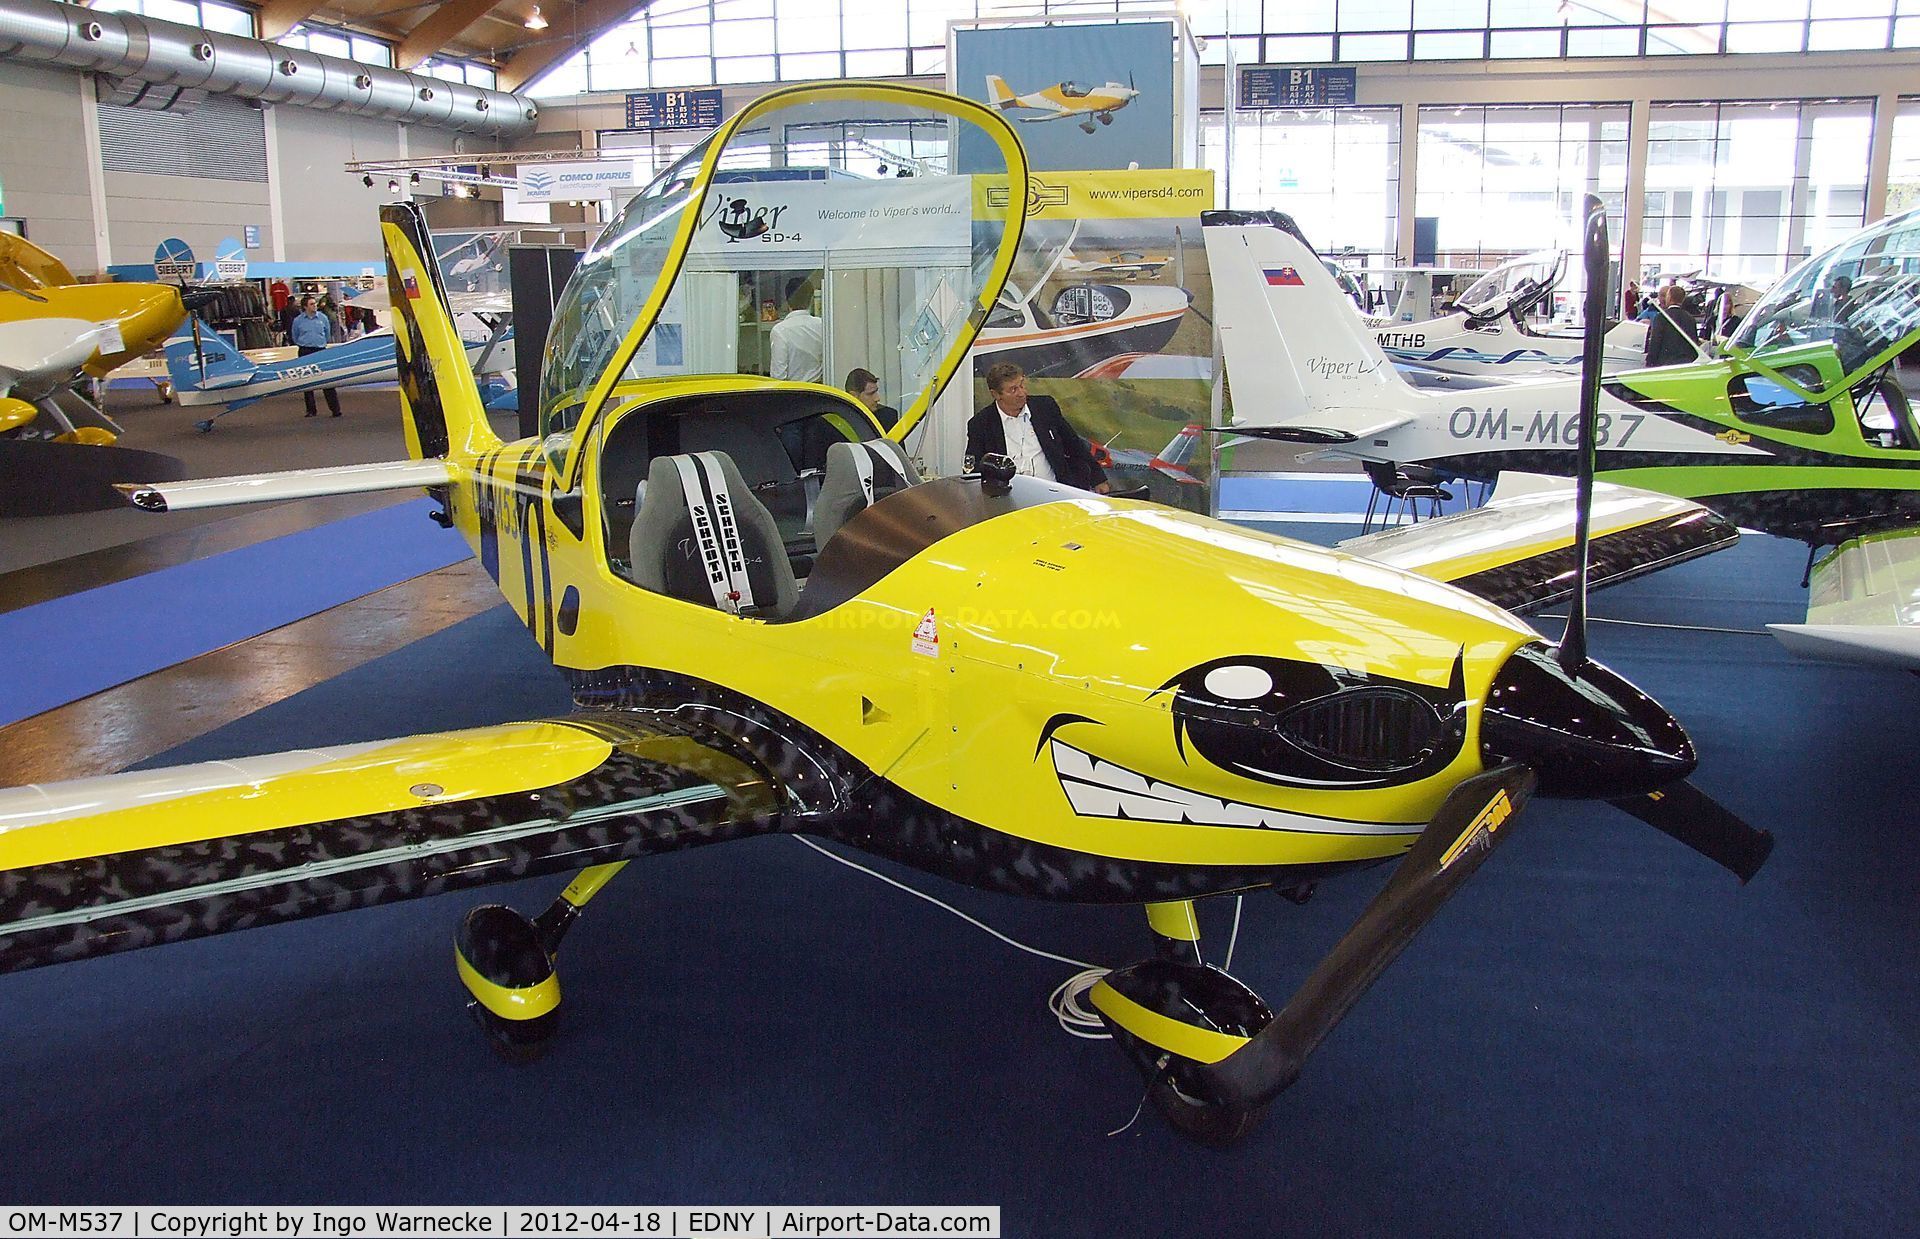 OM-M537, Tomark Aero Viper SD-4 C/N Not found OM-M537, Tomark Viper SD-4 at the AERO 2012, Friedrichshafen